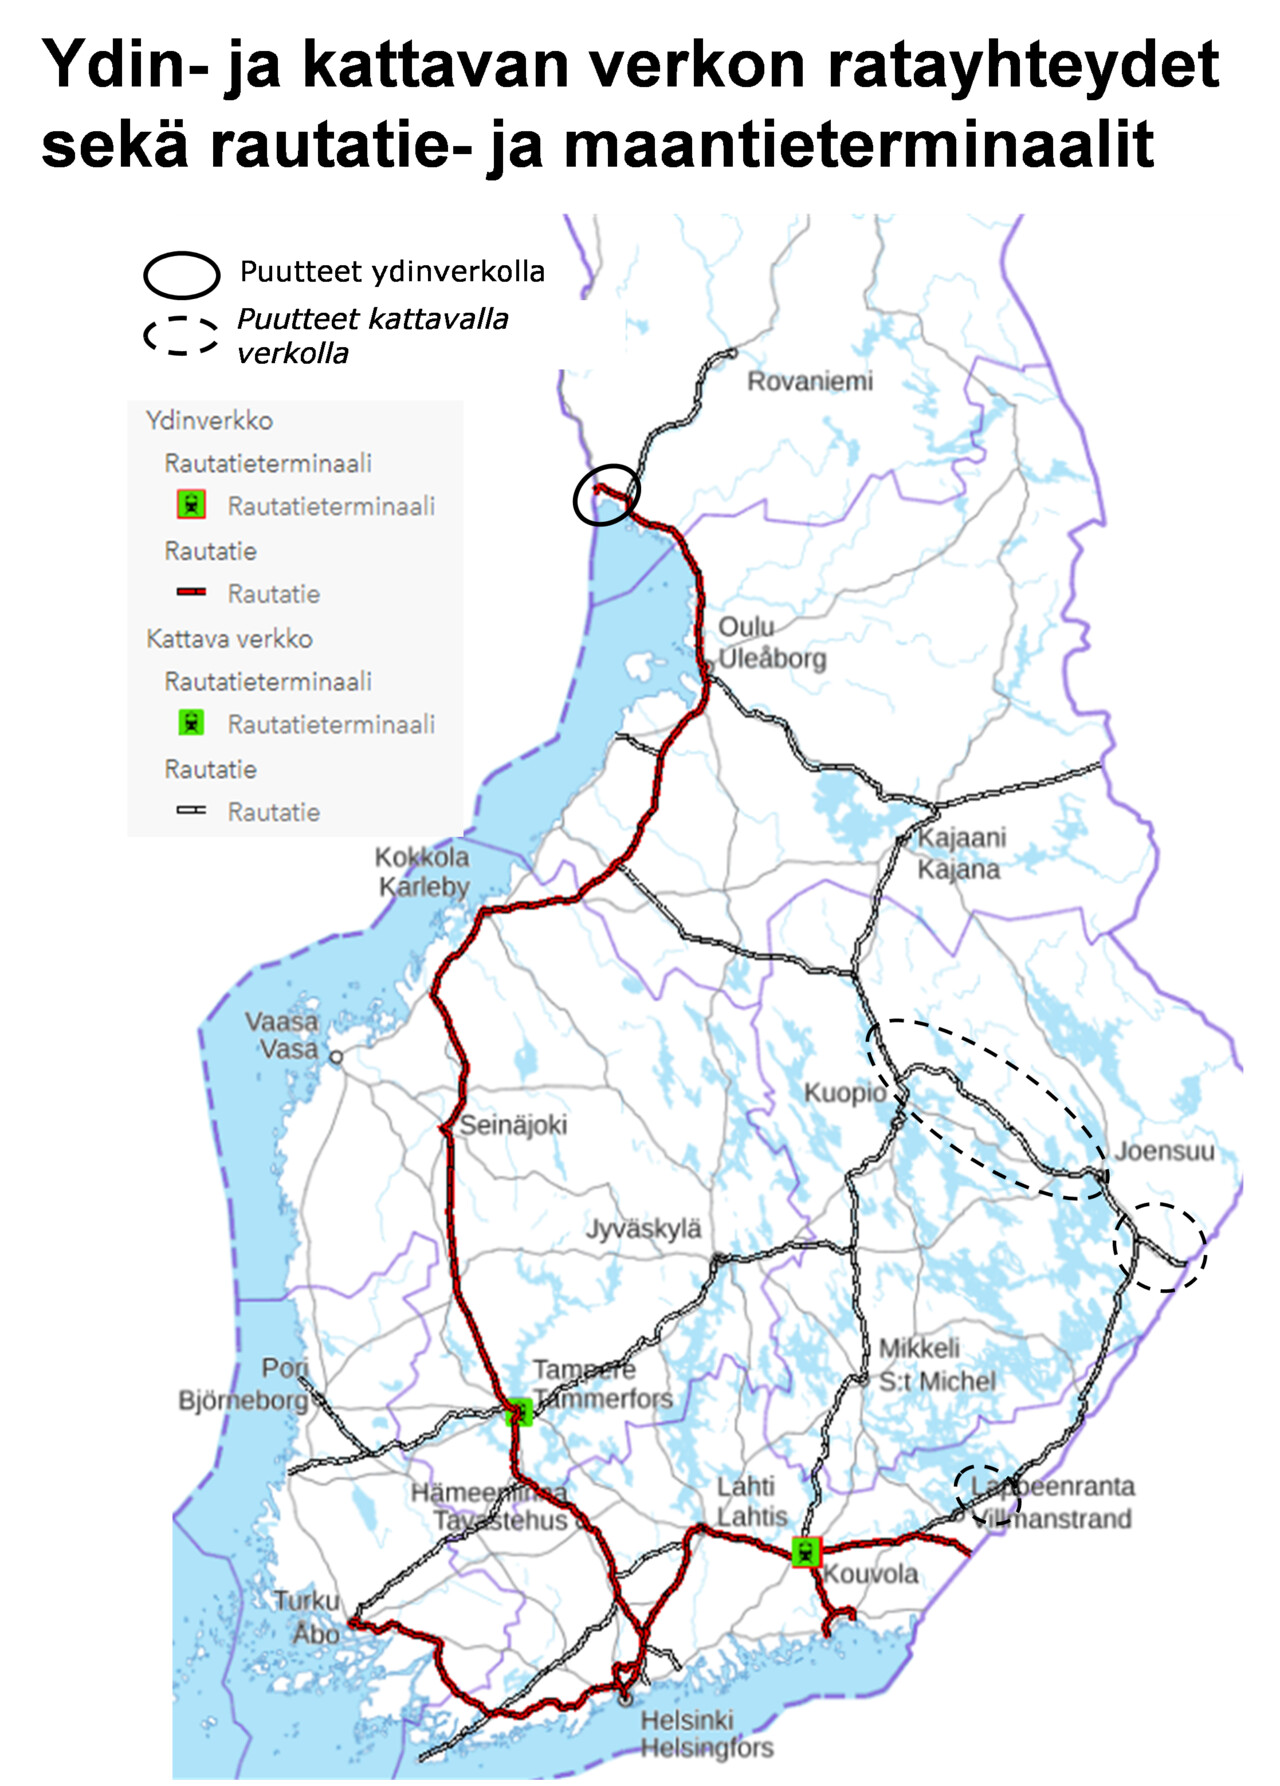 Suomen kartalla esitetty ydin- ja kattavan verkon yhteydet sekä puutteet näillä verkoilla.